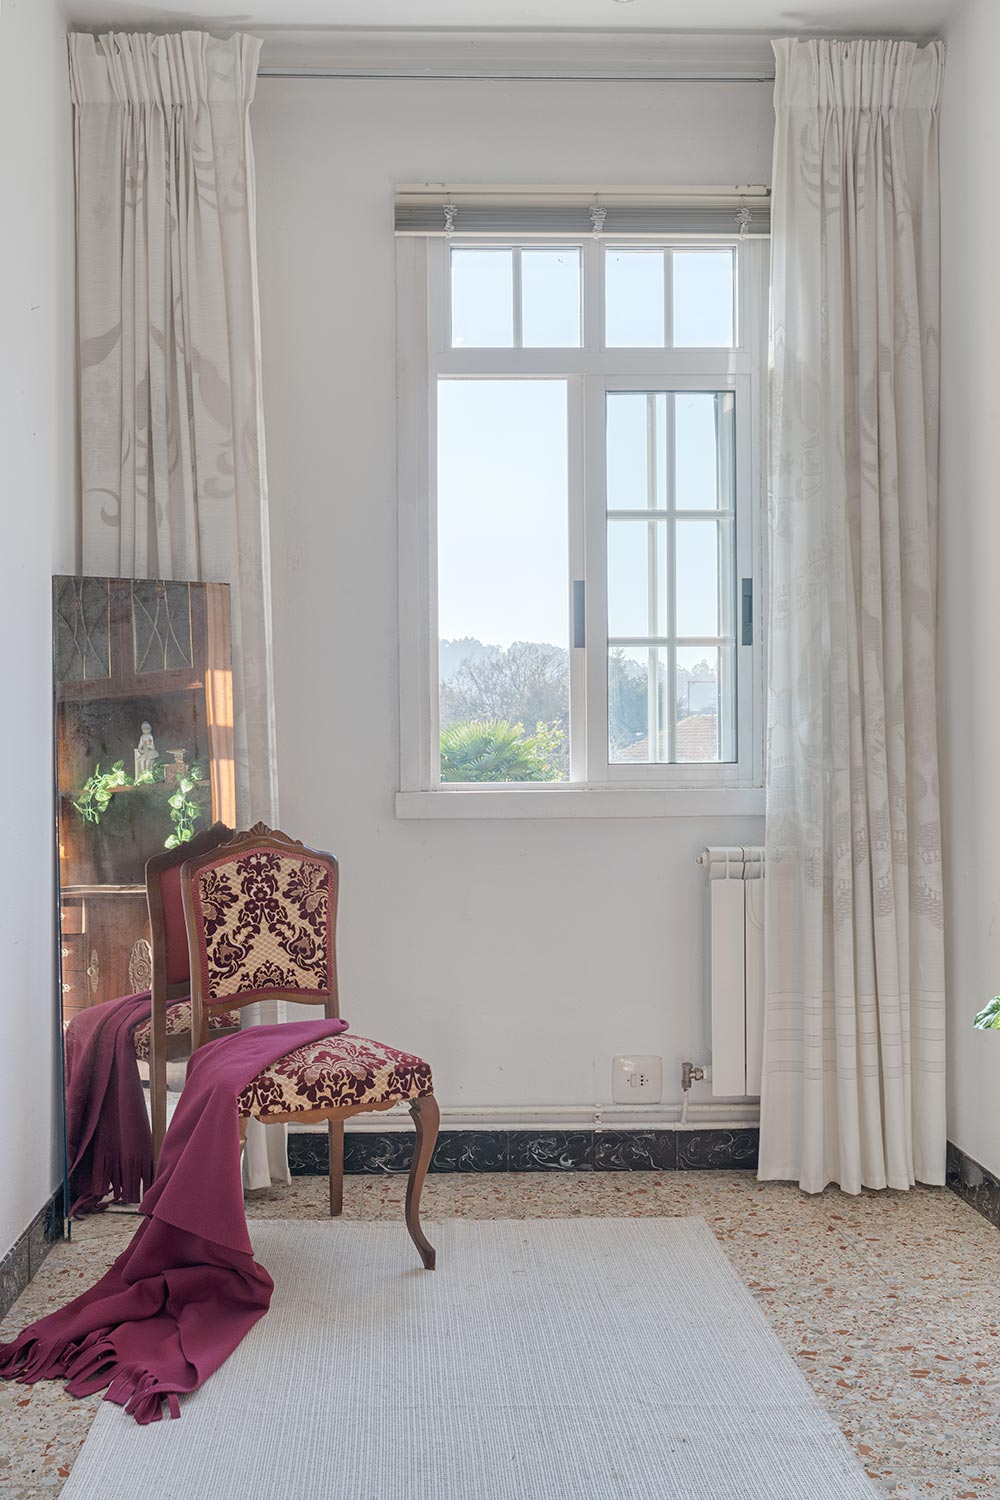 Ventana luminosa con cortinas y silla clásica con tapizado rojo y blanco en una habitación.